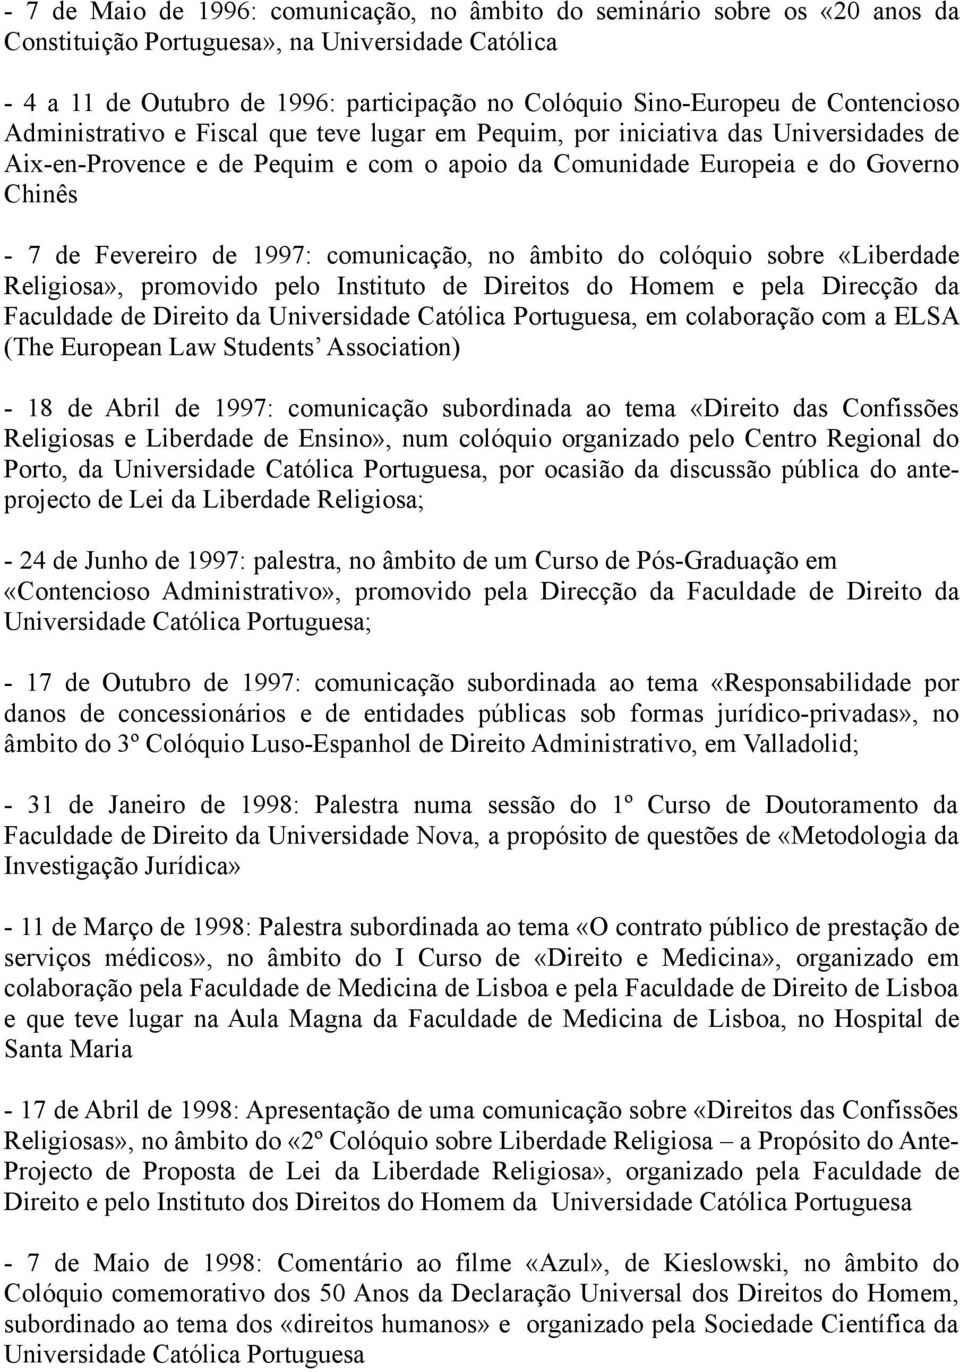 de 1997: comunicação, no âmbito do colóquio sobre «Liberdade Religiosa», promovido pelo Instituto de Direitos do Homem e pela Direcção da Faculdade de Direito da Universidade Católica Portuguesa, em